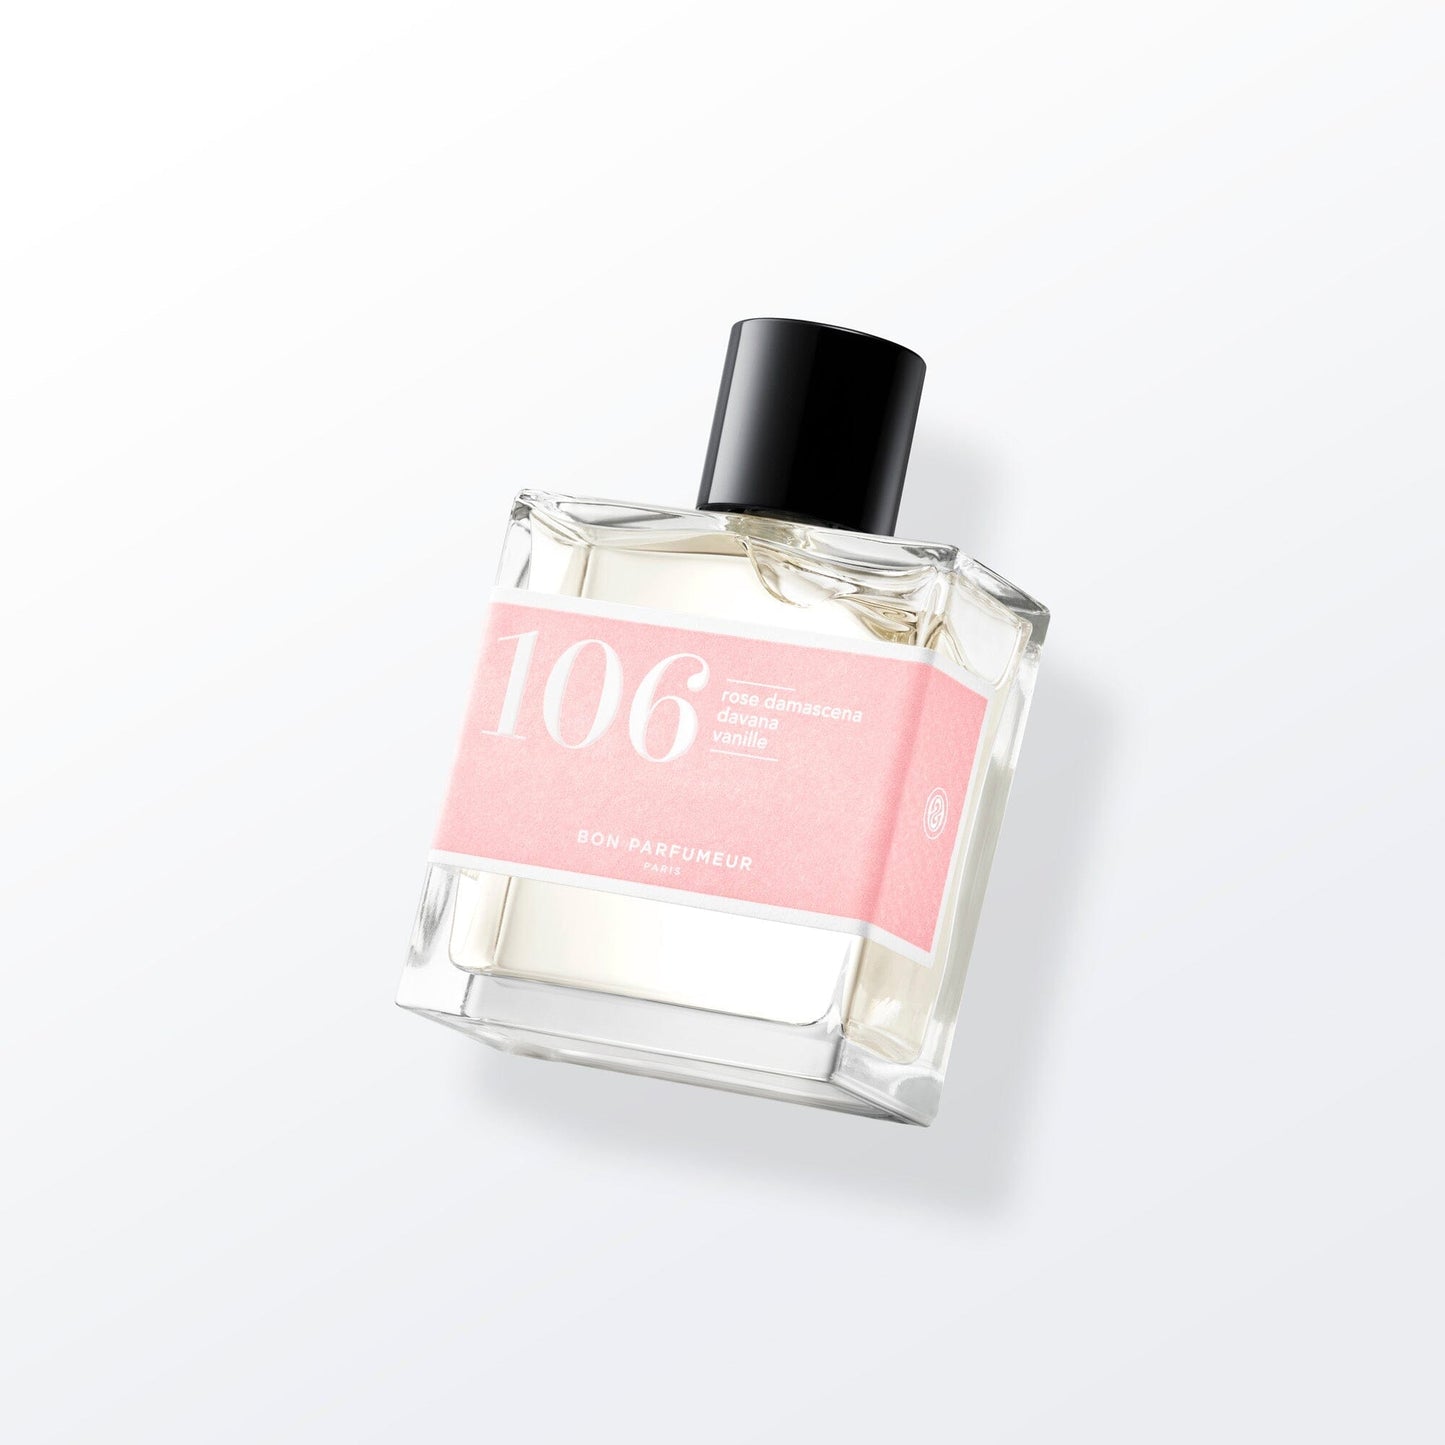 Eau de parfum 106 à la rose damascena, au davana et à la vanille Eau de parfum Bon Parfumeur France 